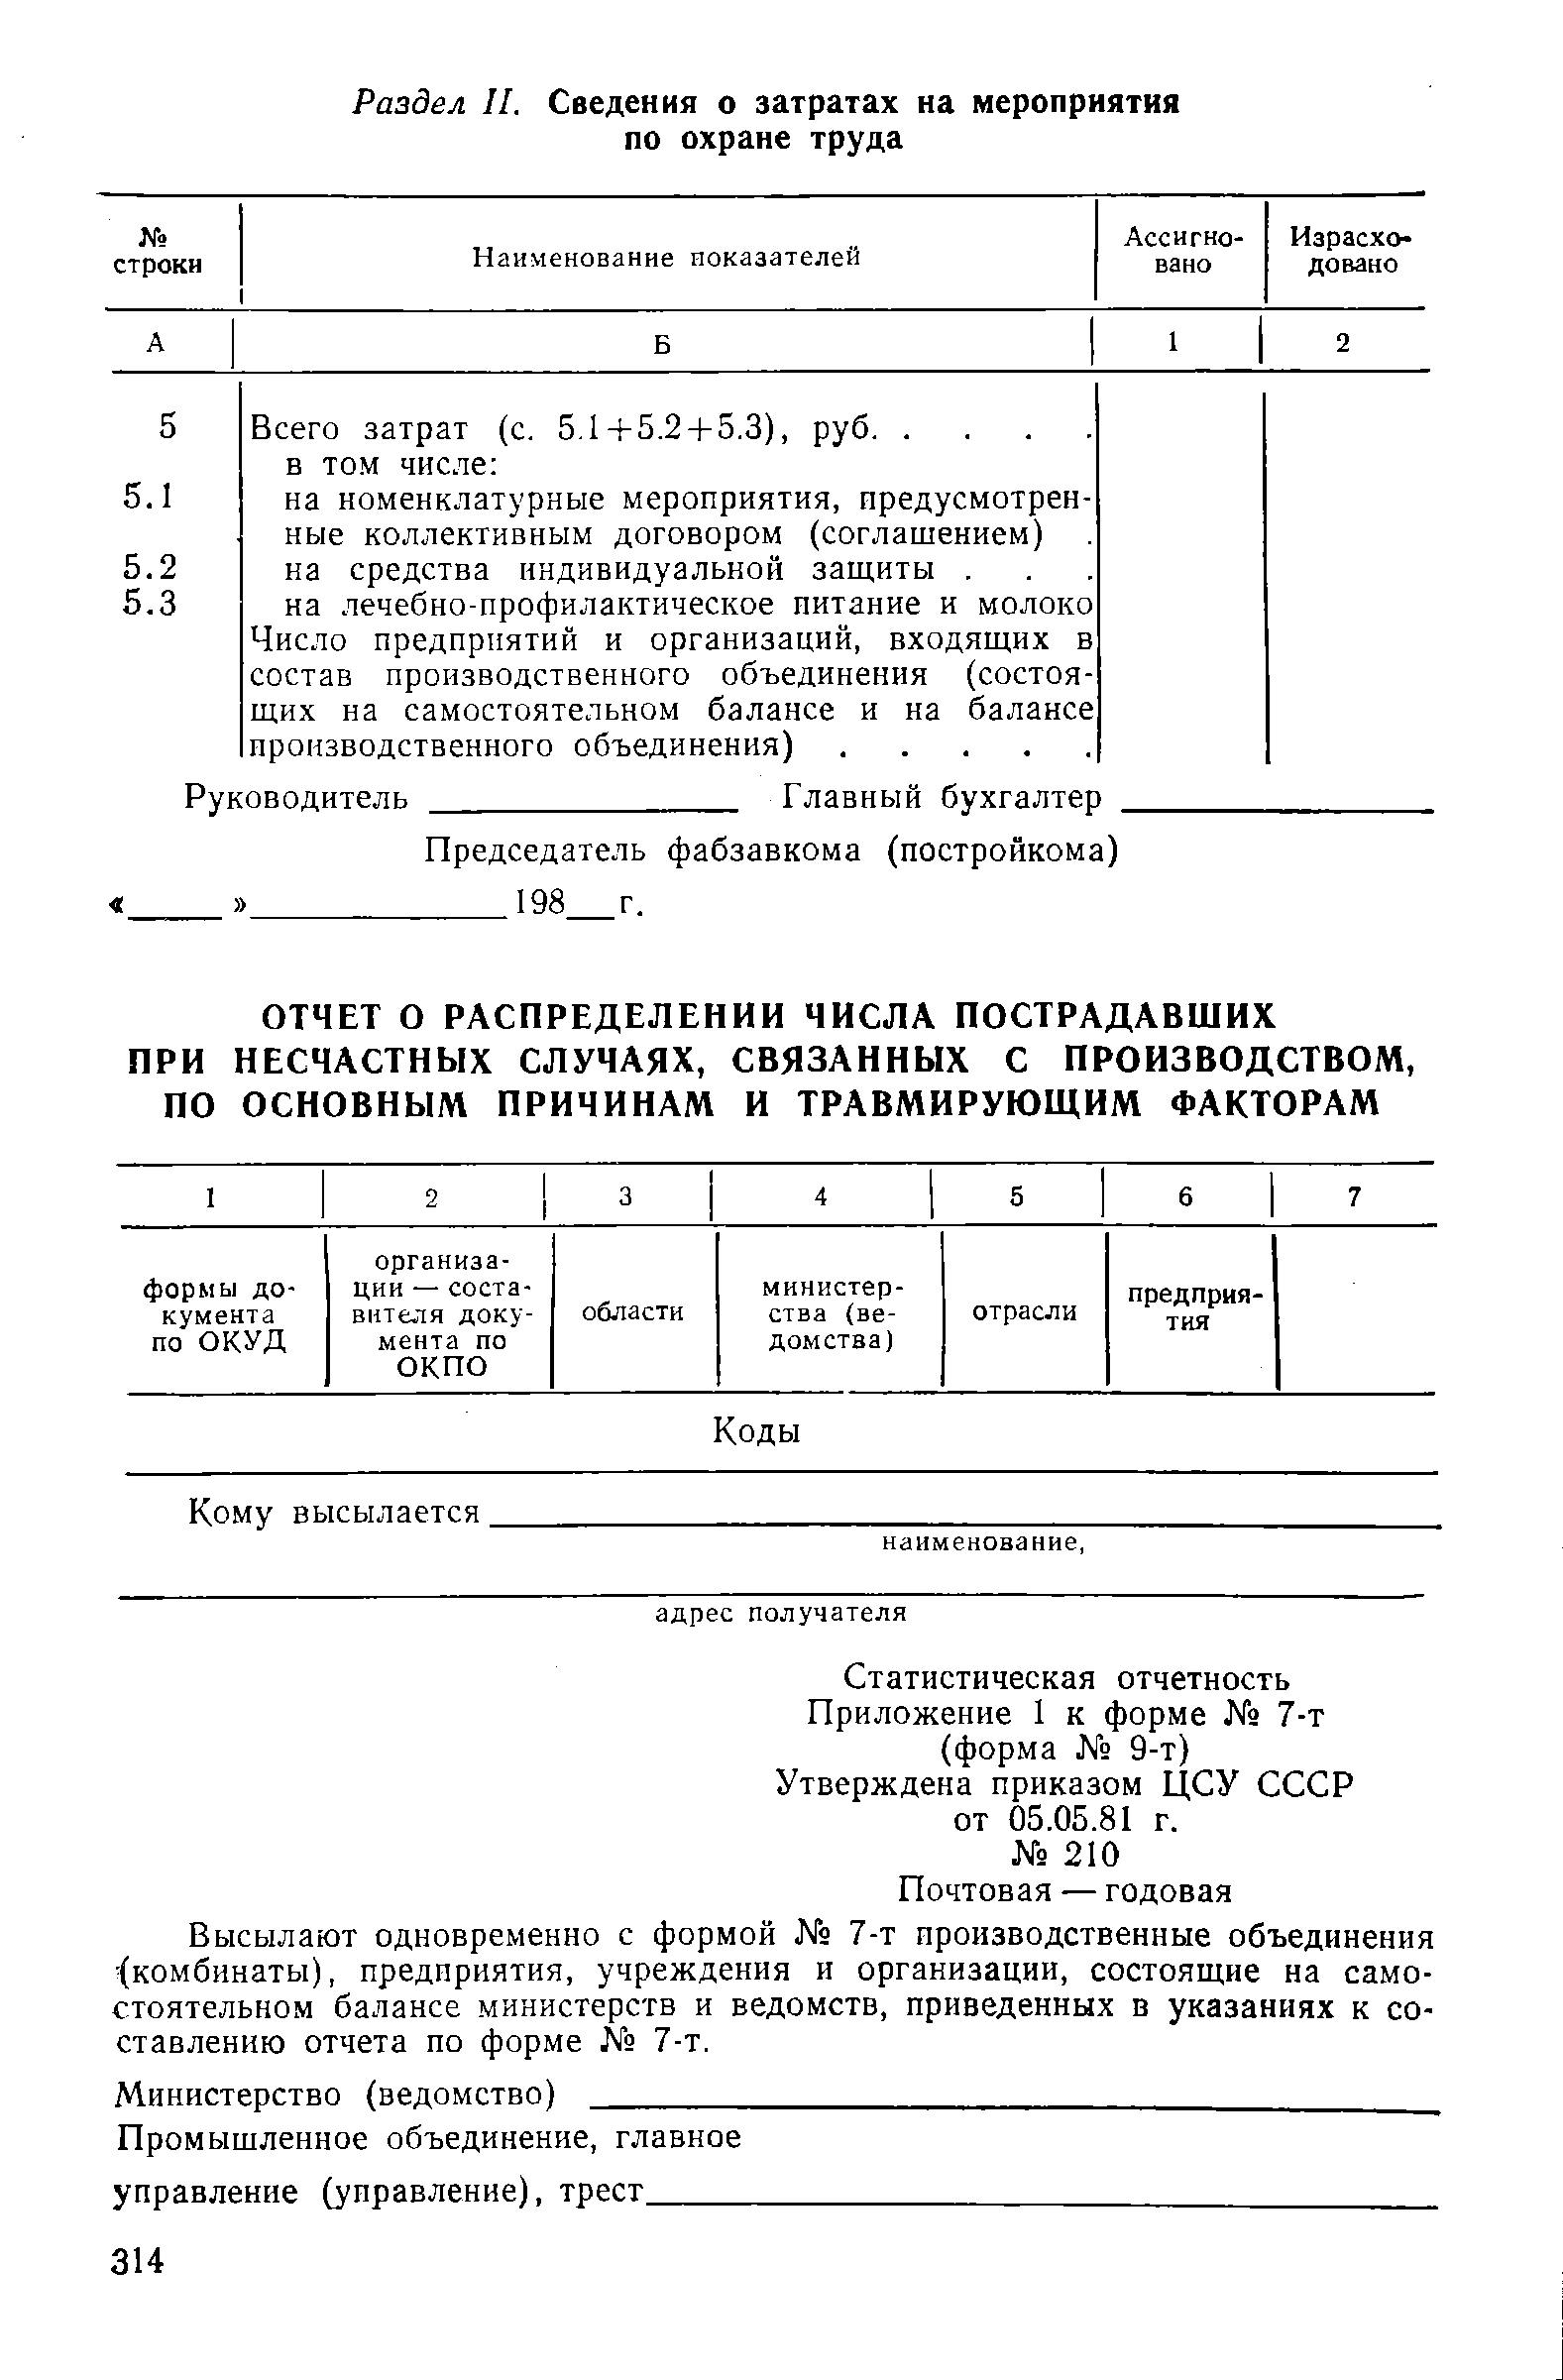 Утверждена приказом ЦСУ СССР от 05.05.81 г.